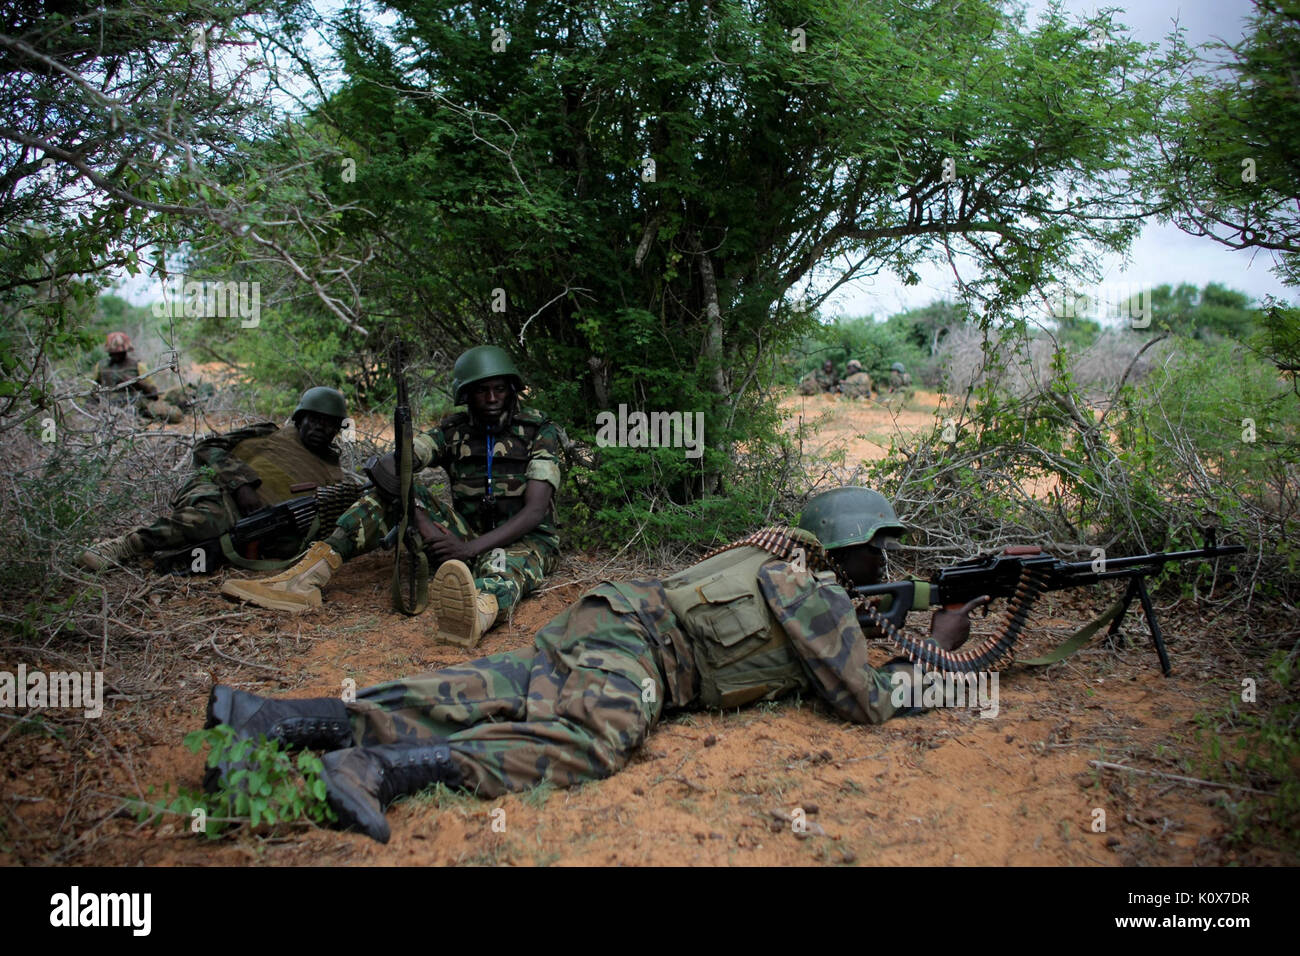 Die AMISOM&Somali National Army operation Afgoye Korridor Tag 1 15 (7293166504) Stockfoto